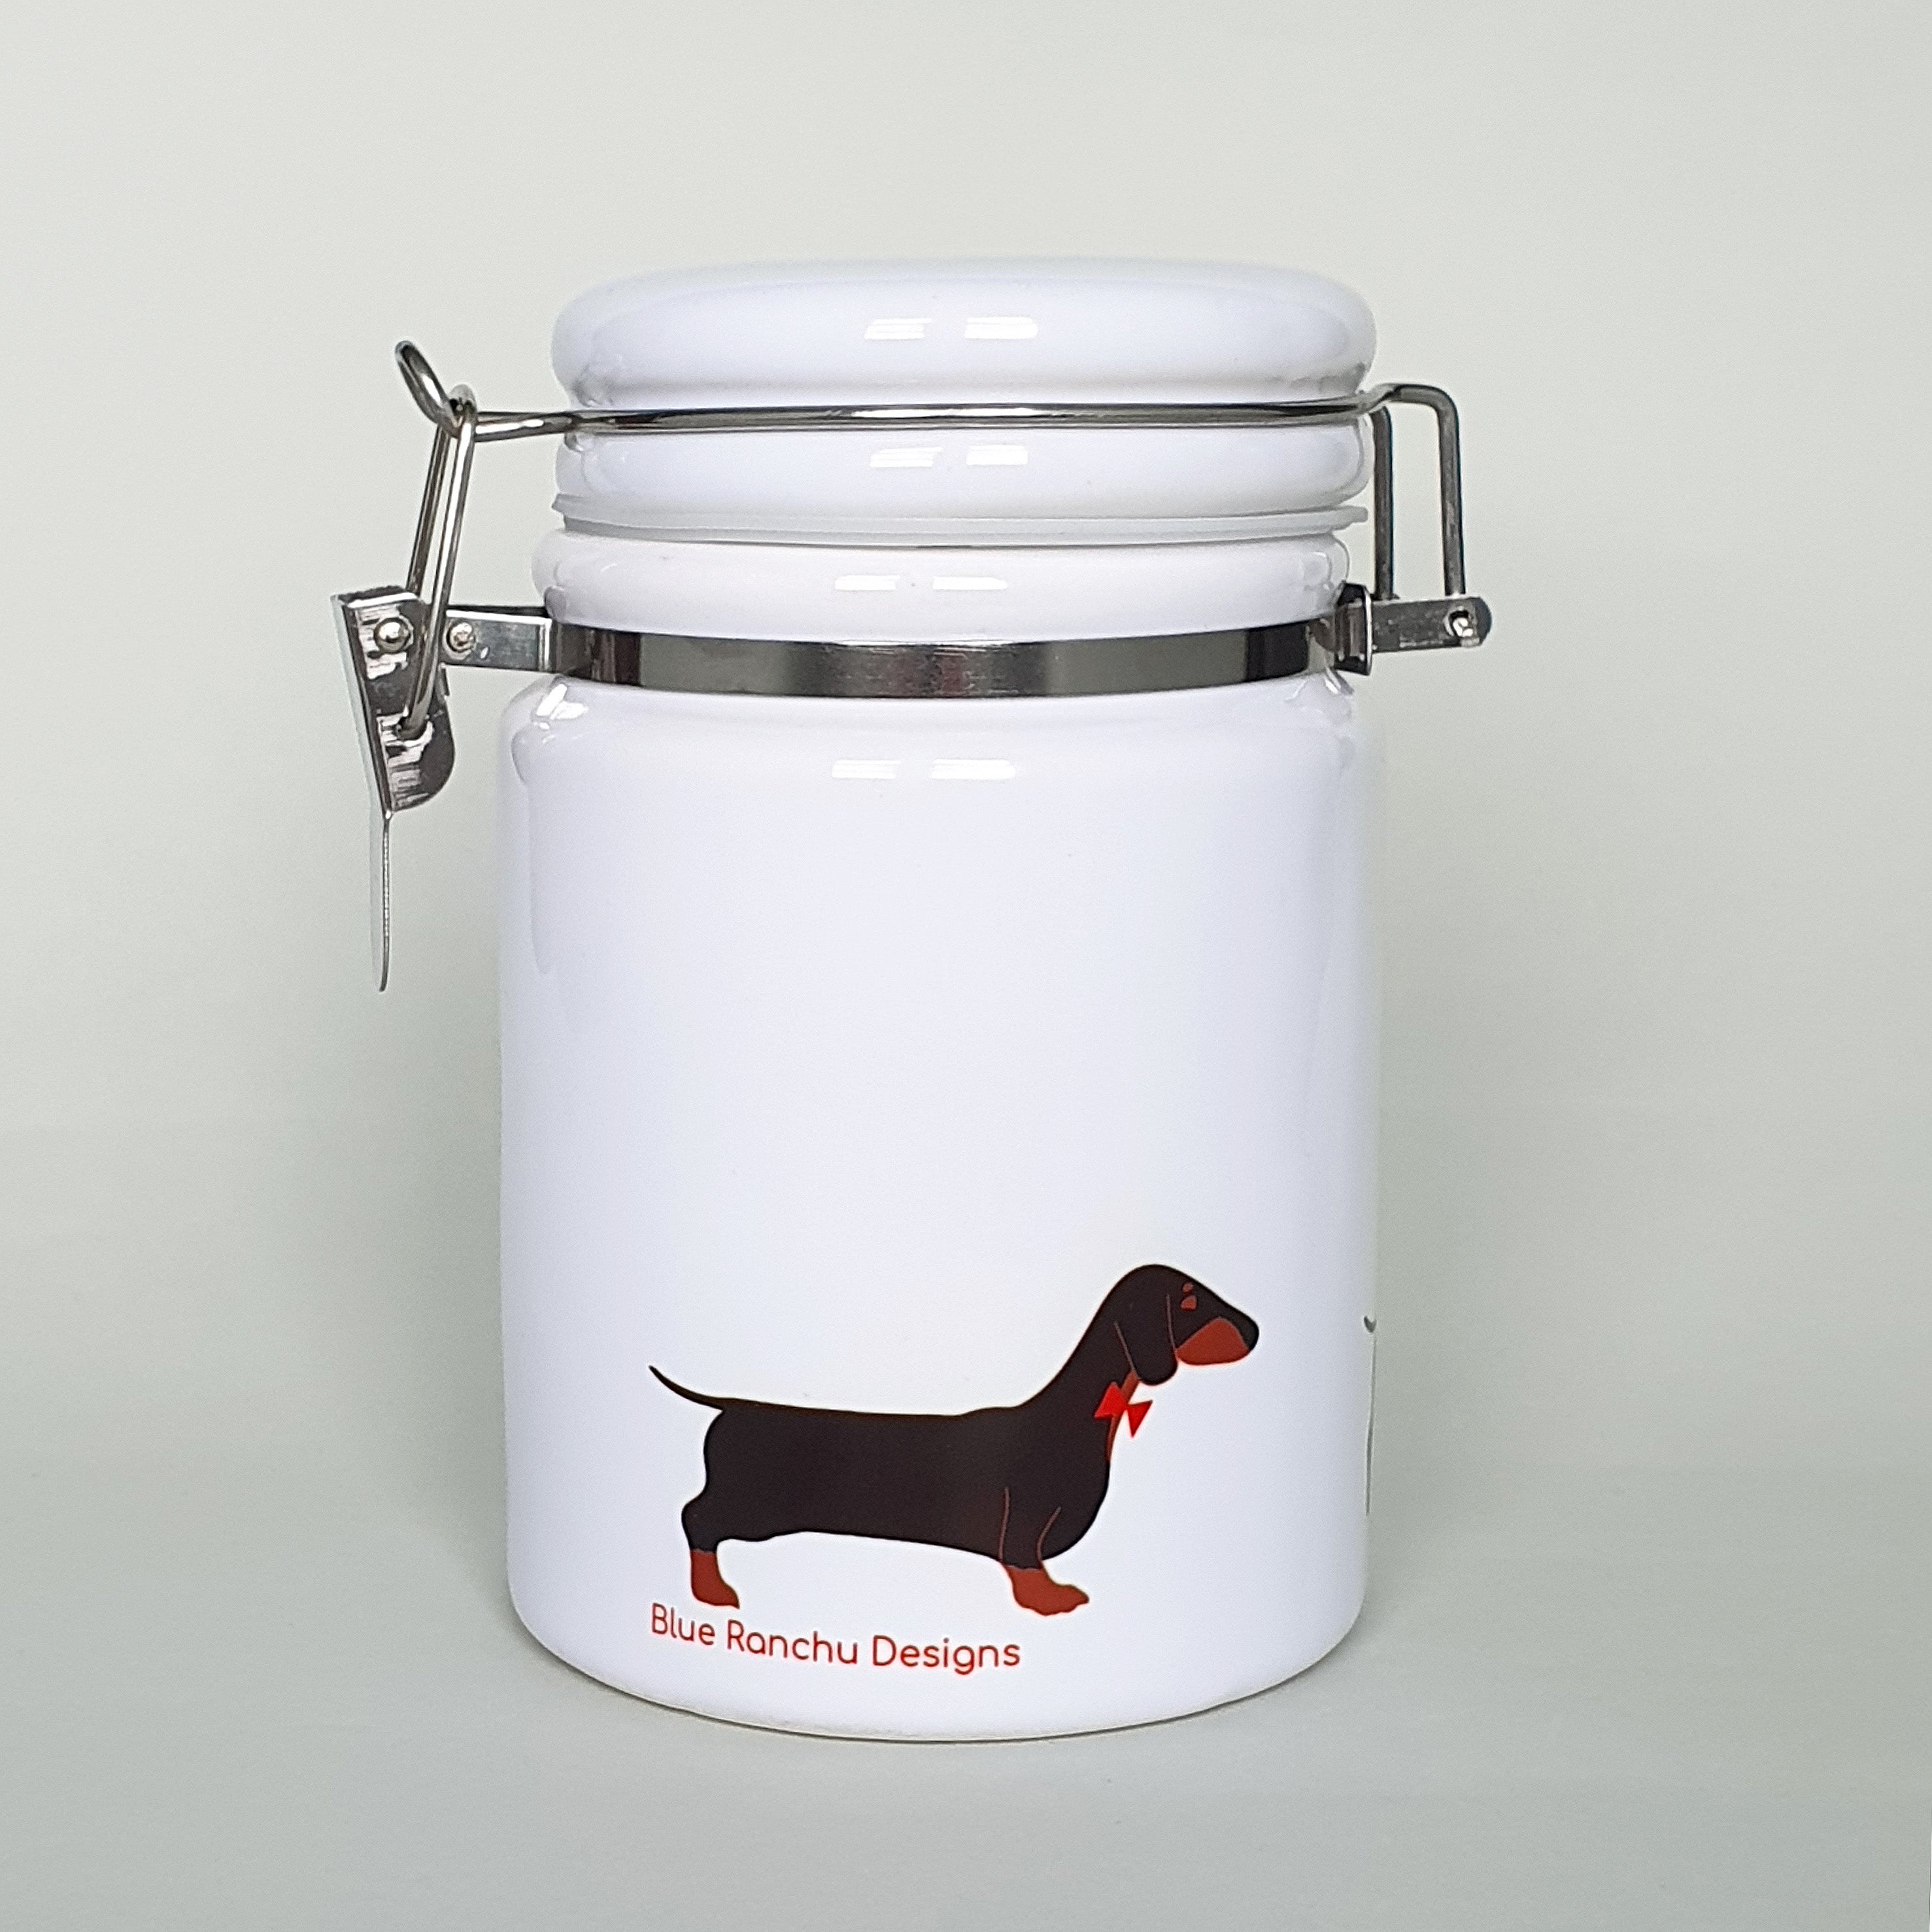 Black & Tan Dachshund ceramic storage jar